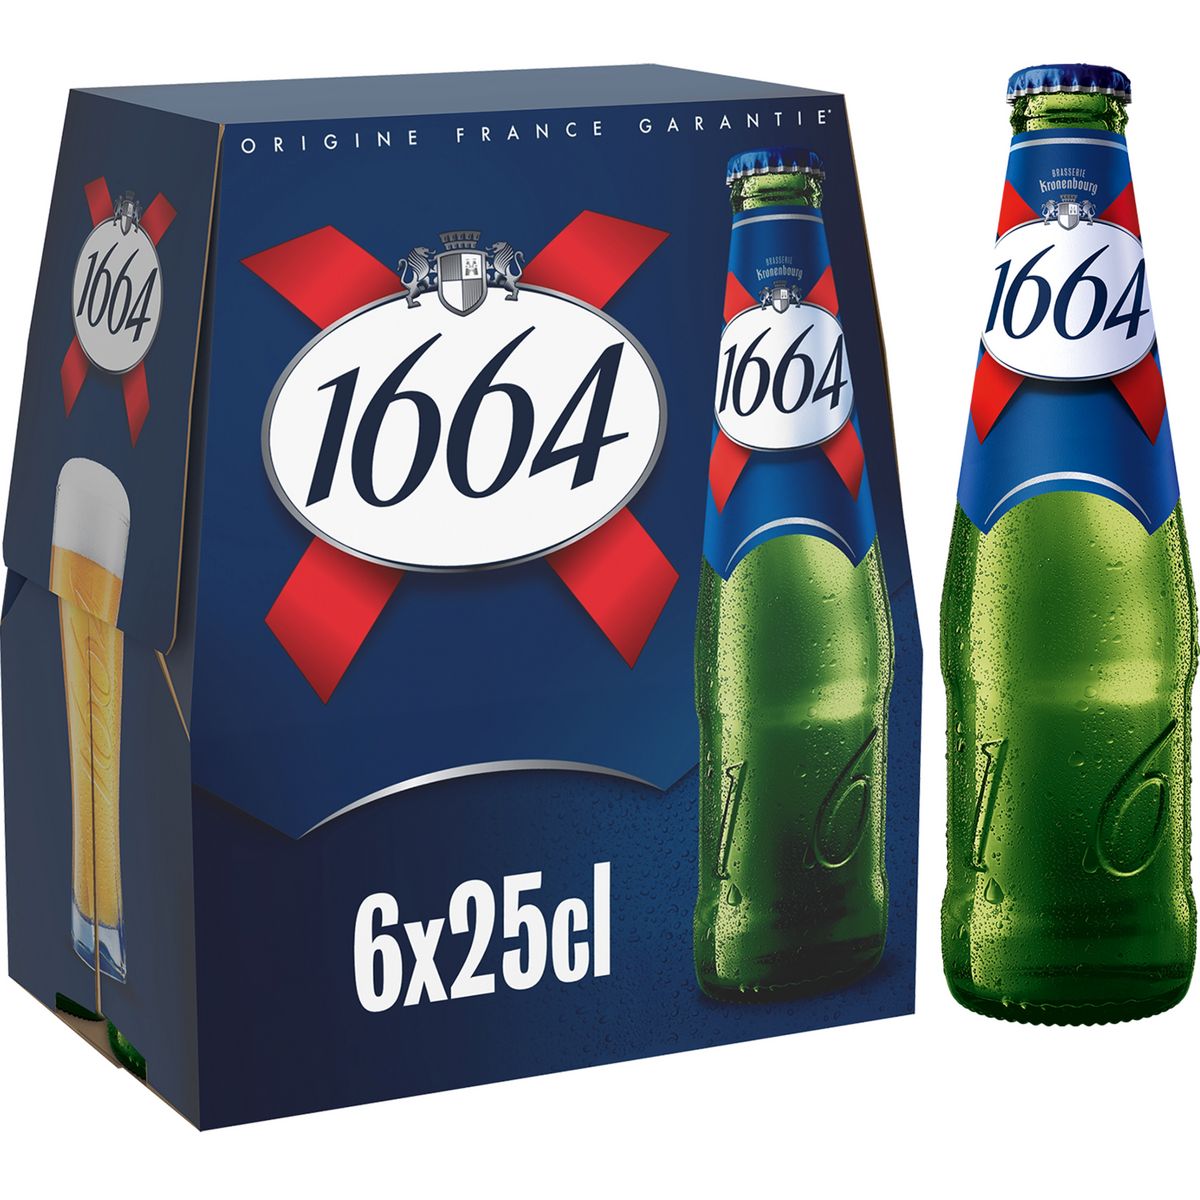 1664 Bière blonde 5,5% bouteilles 6x25cl